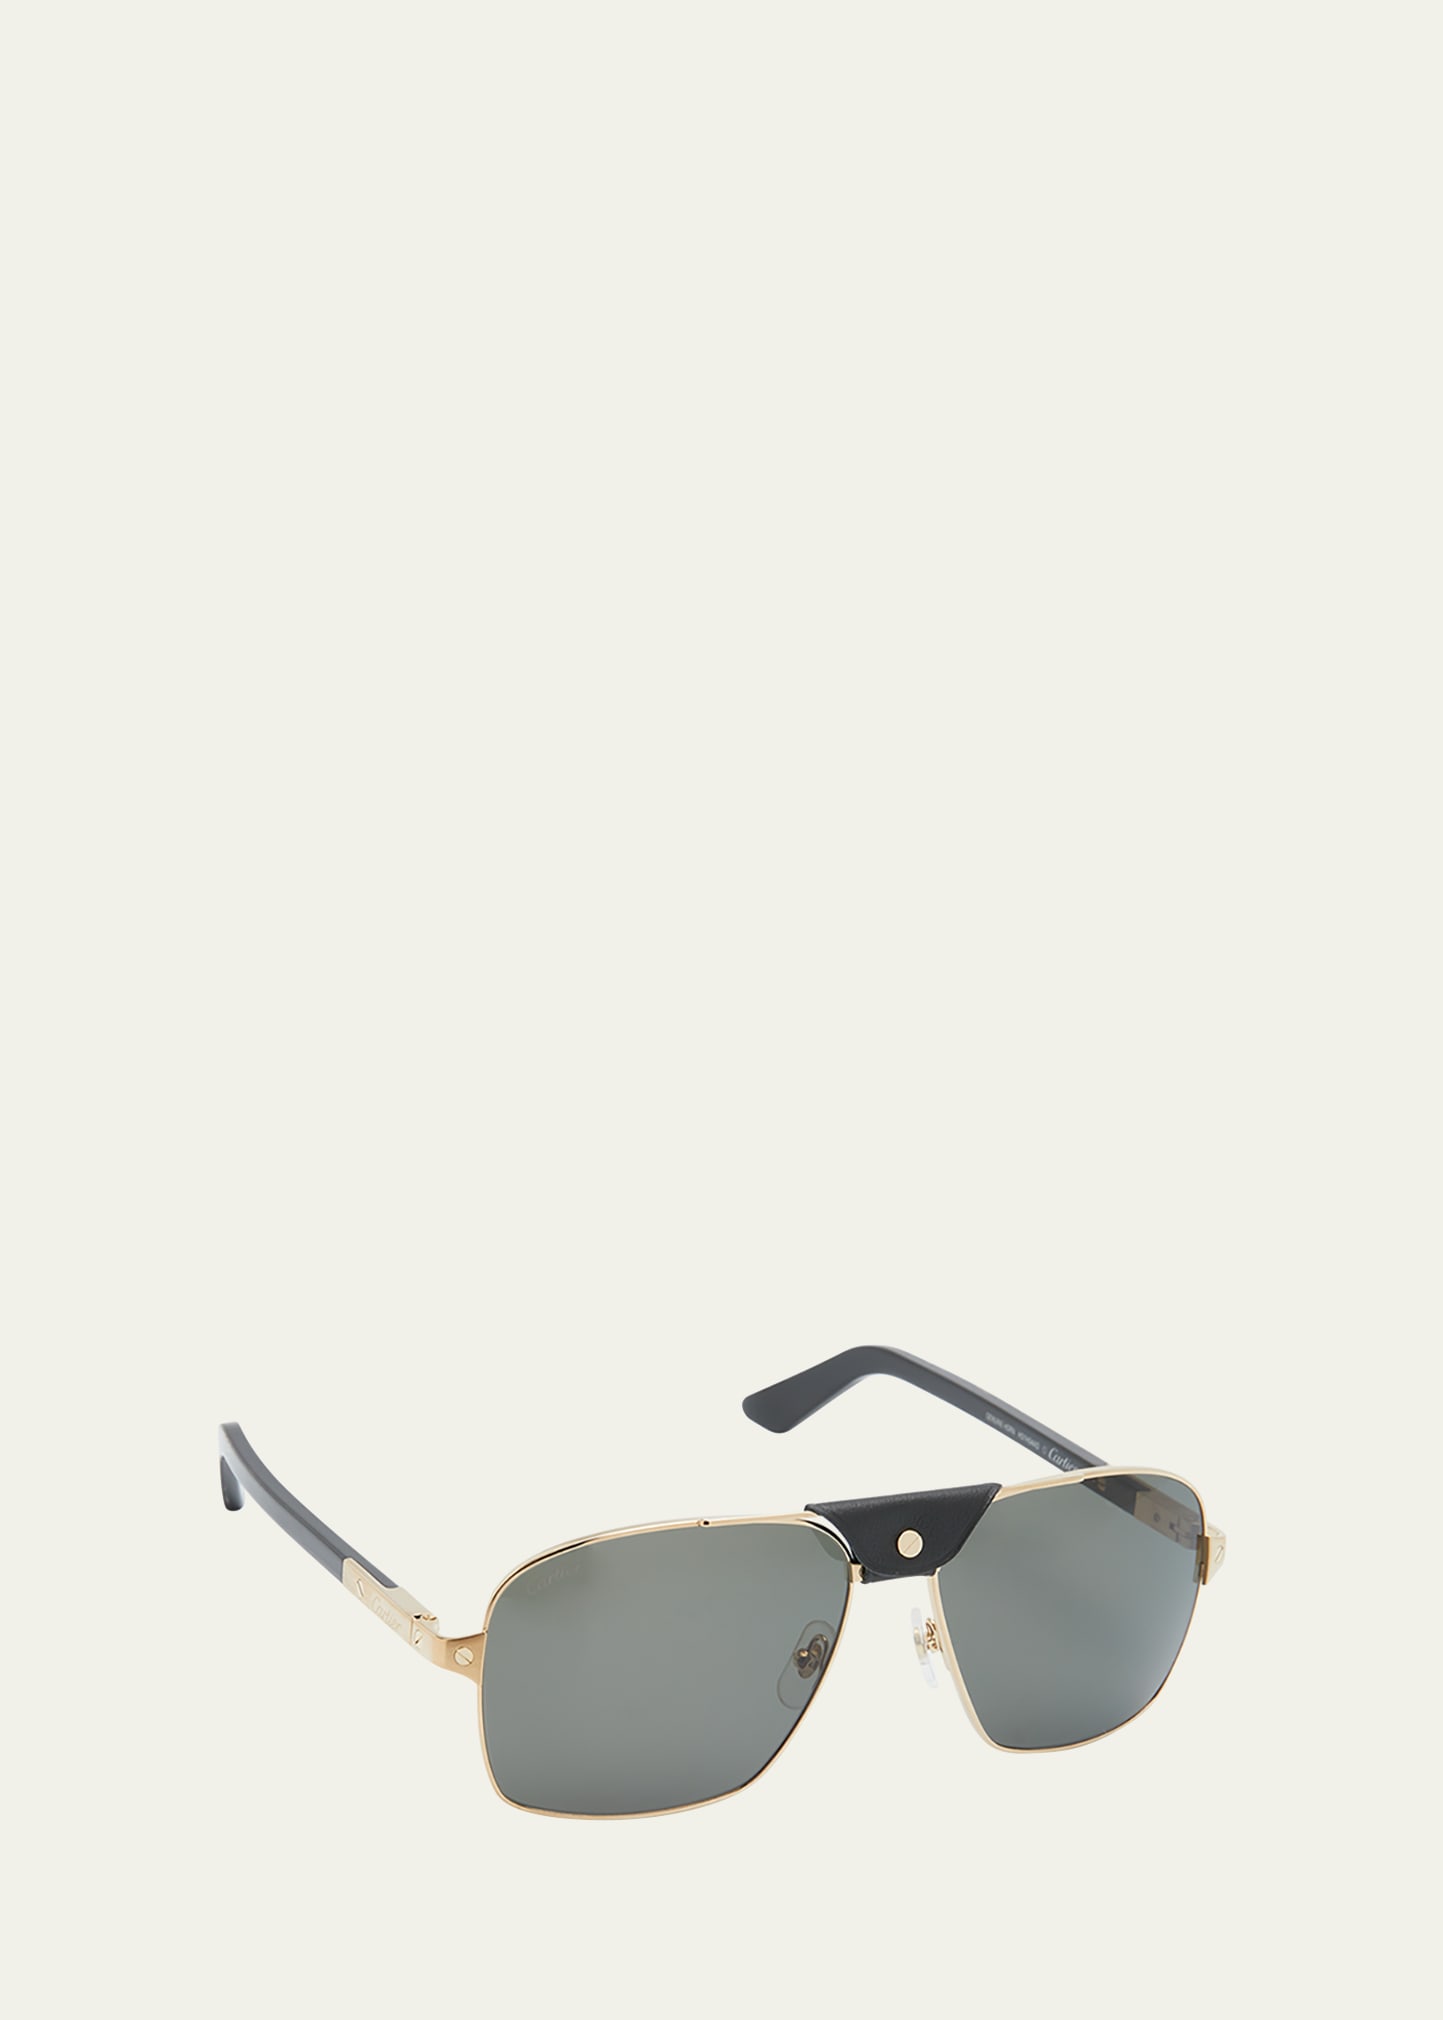 Cartier Men's Santos Evolution Half-Rim Aviator Sunglasses